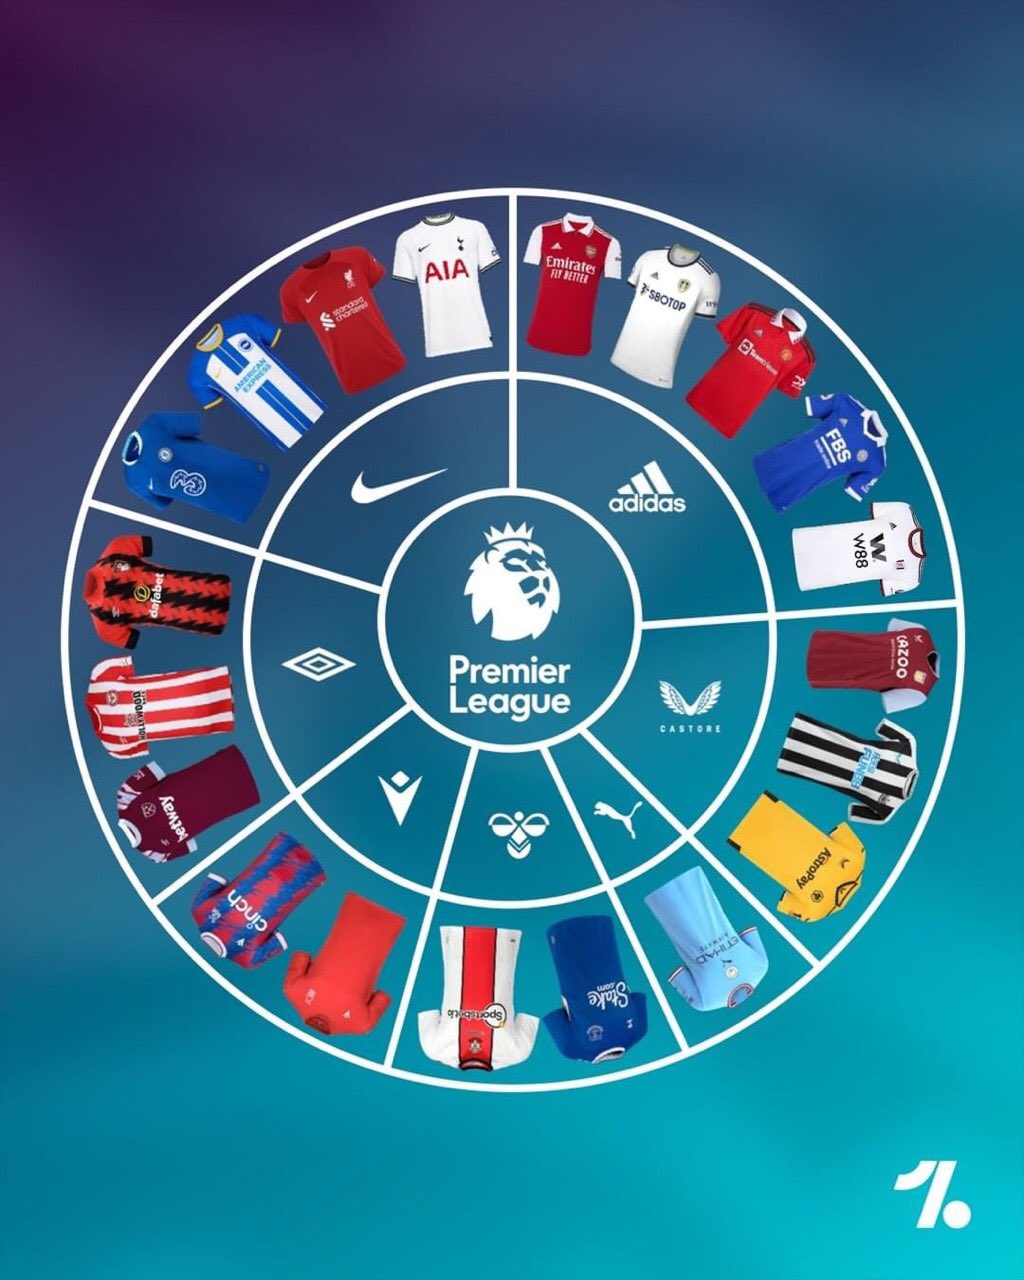 Futbol de Inglaterra on Twitter: "Así las marcas de los uniformes de los equipos de la Premier League en esta temporada. 25%: Adidas 20%: Nike 15%: Umbro Castore